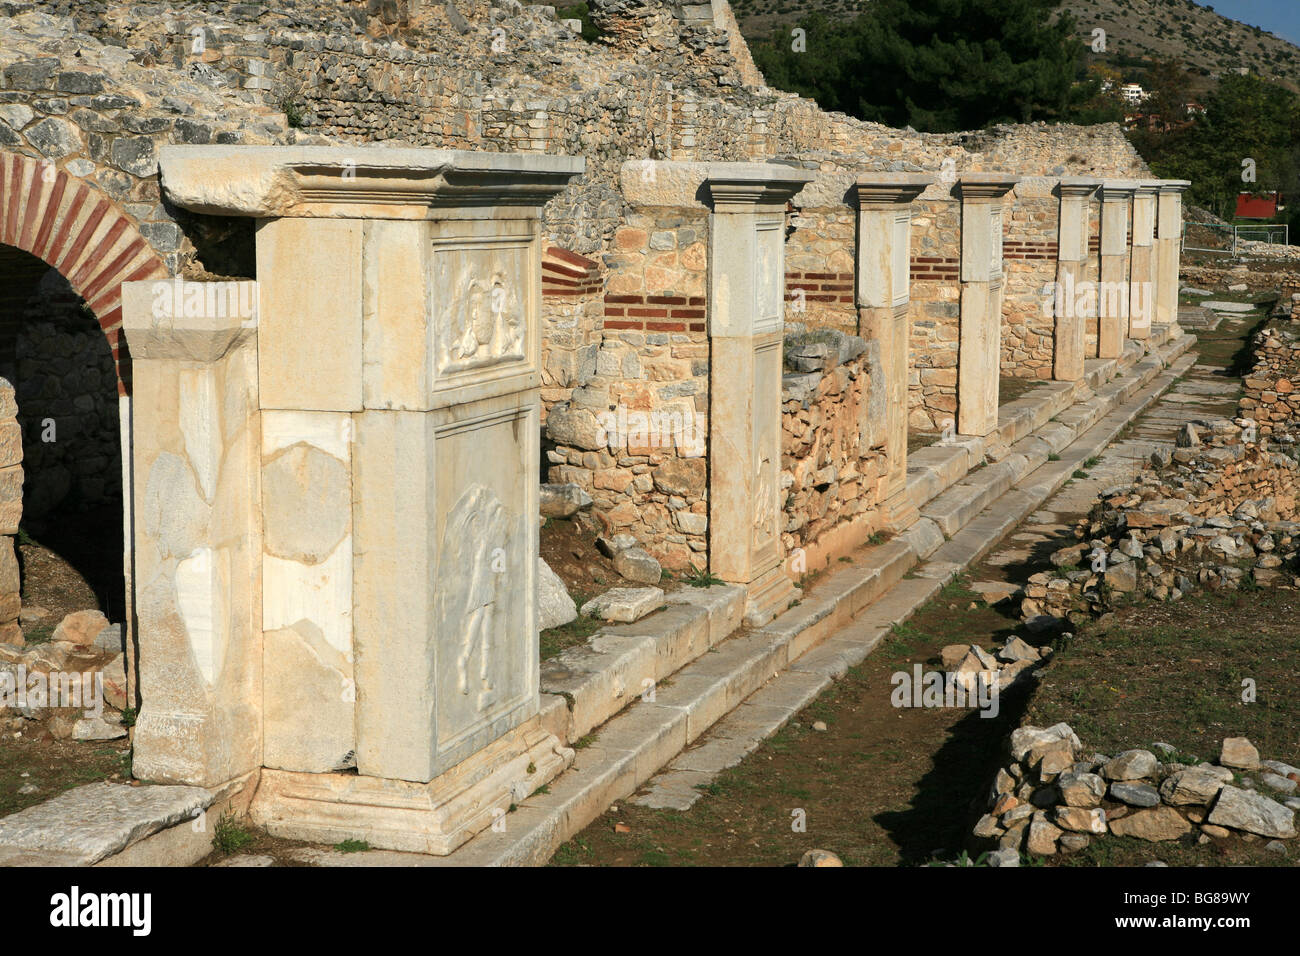 Ruines de l'amphithéâtre antique de Philippes près de Kavala, Grèce Banque D'Images